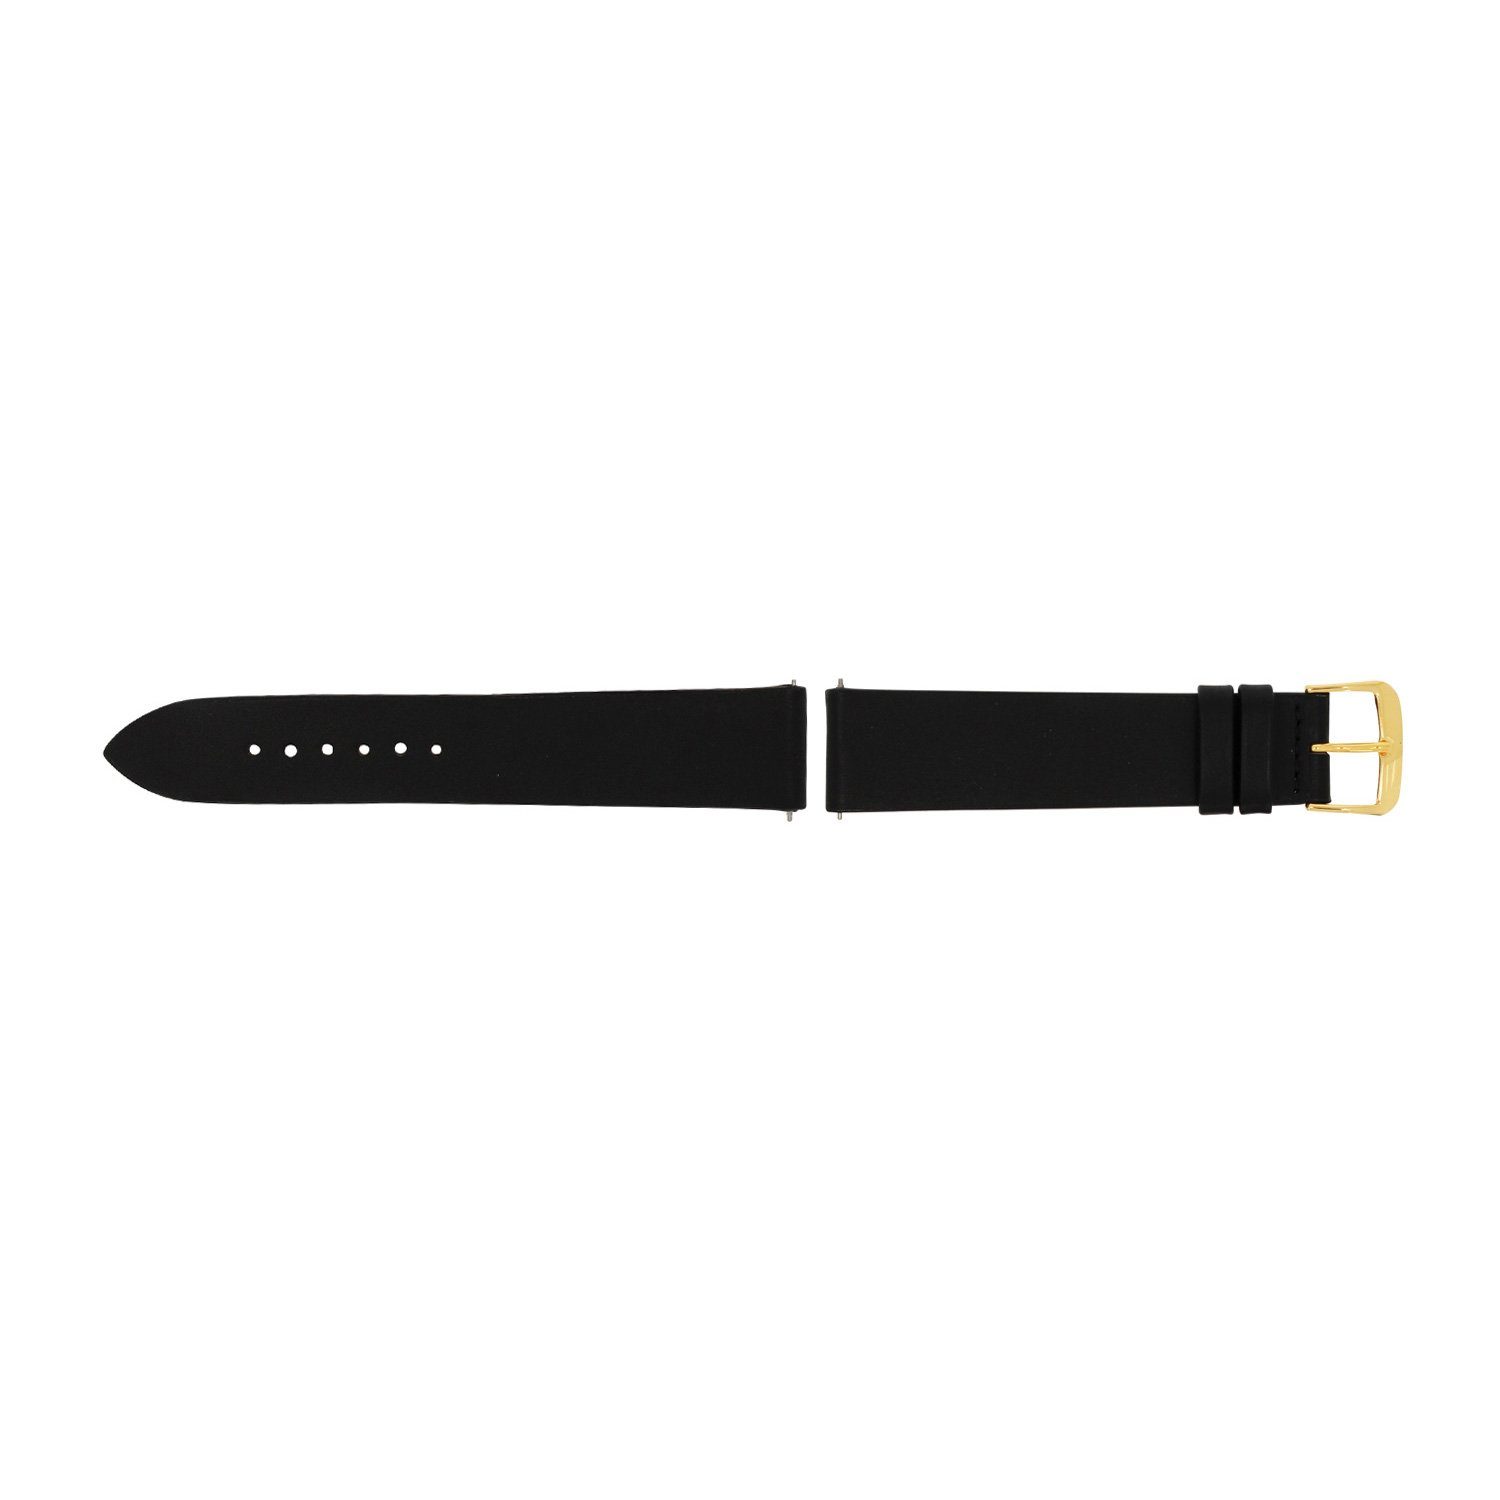 Selva Technik Wechselarmband gelb schwarz ohne Naht, ohne Release, made Wechseln, Germany Naht, Quick in einfachen Uhrenarmband, 22mm zum